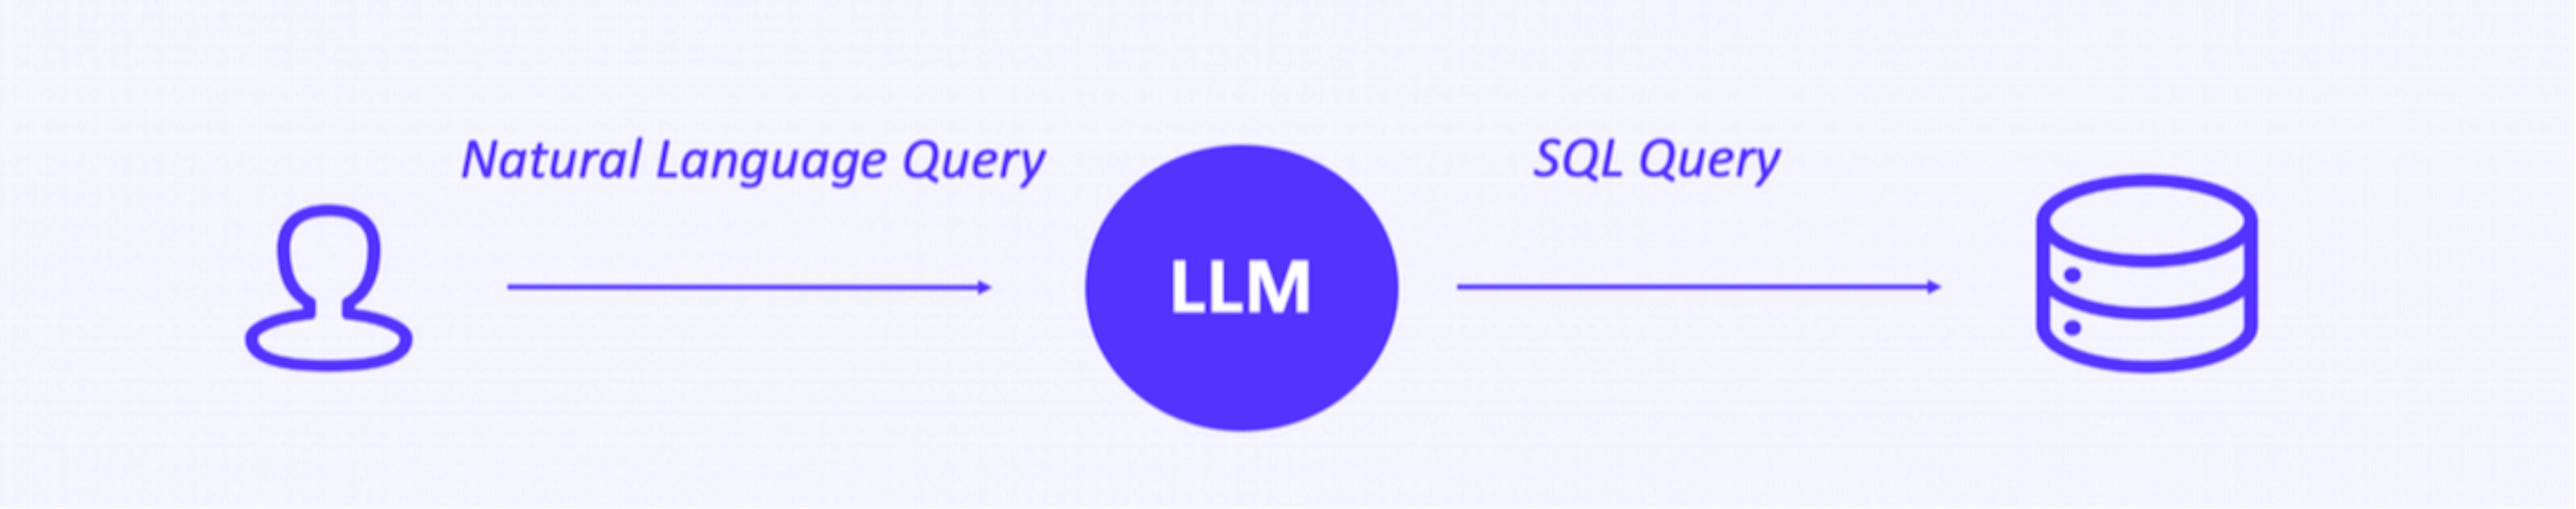 Utiliser le LLM comme intermédiaire